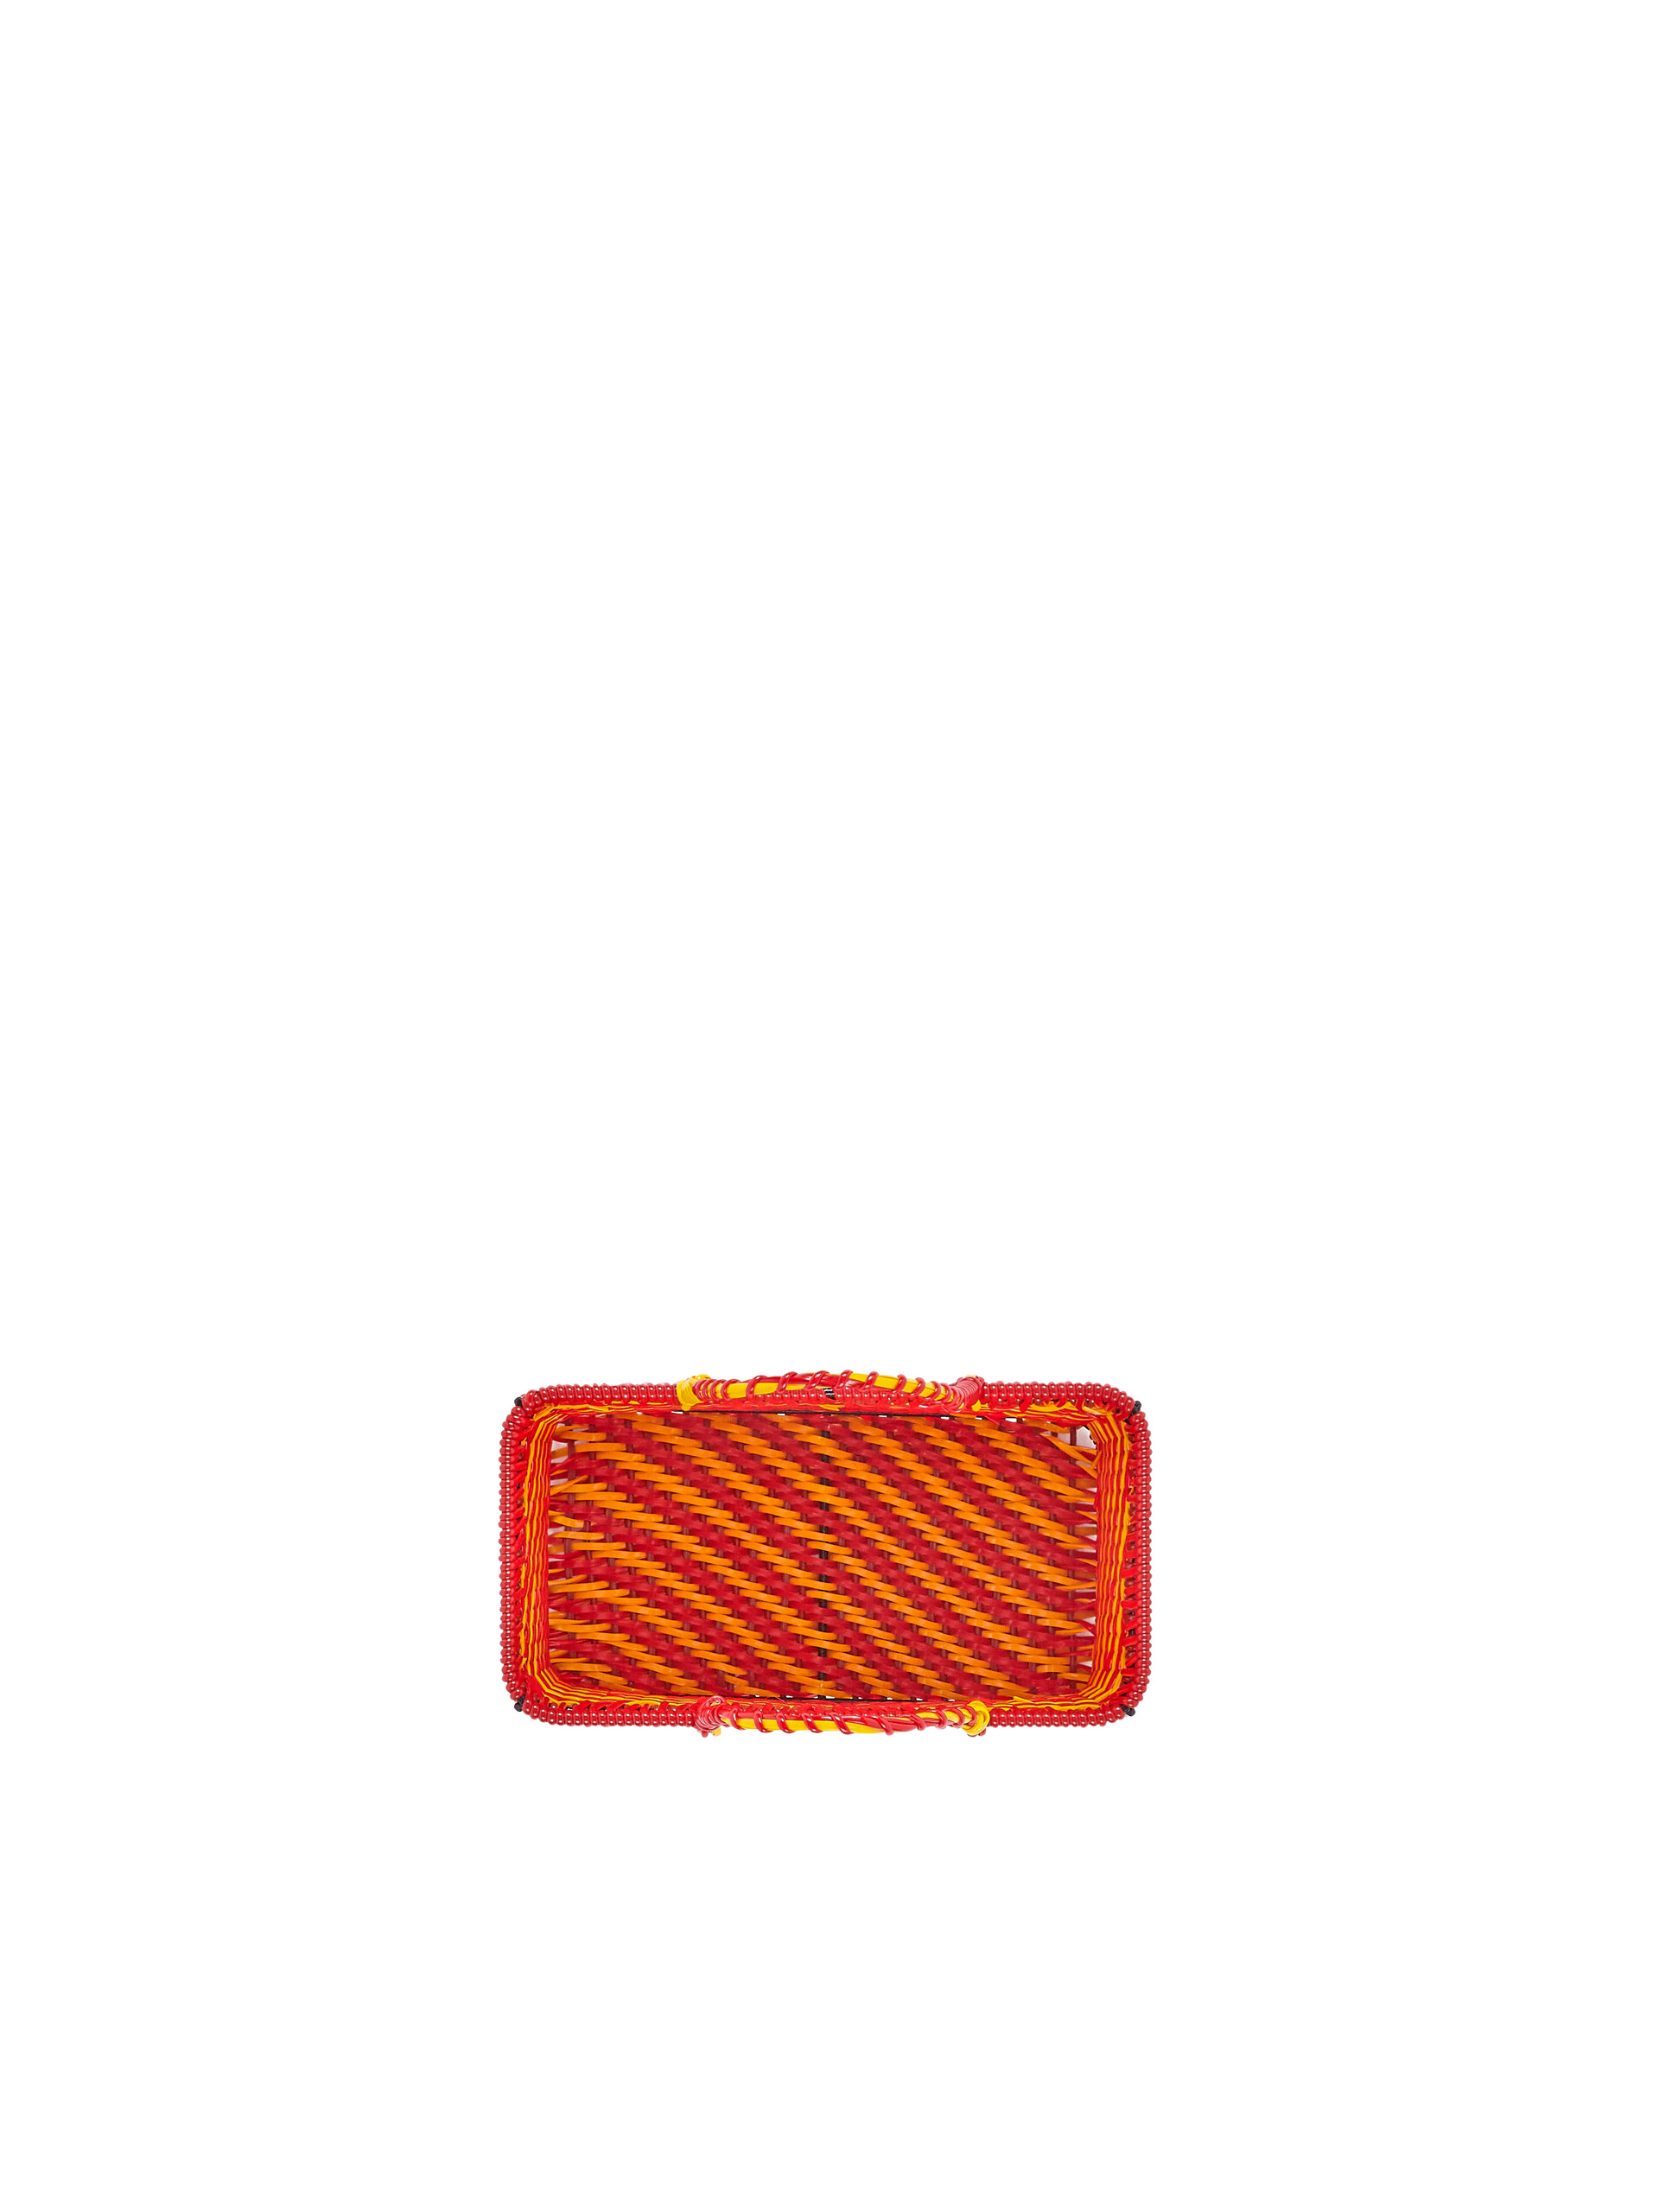 Panier MARNI MARKET orange et rouge - Accessoires - Image 4